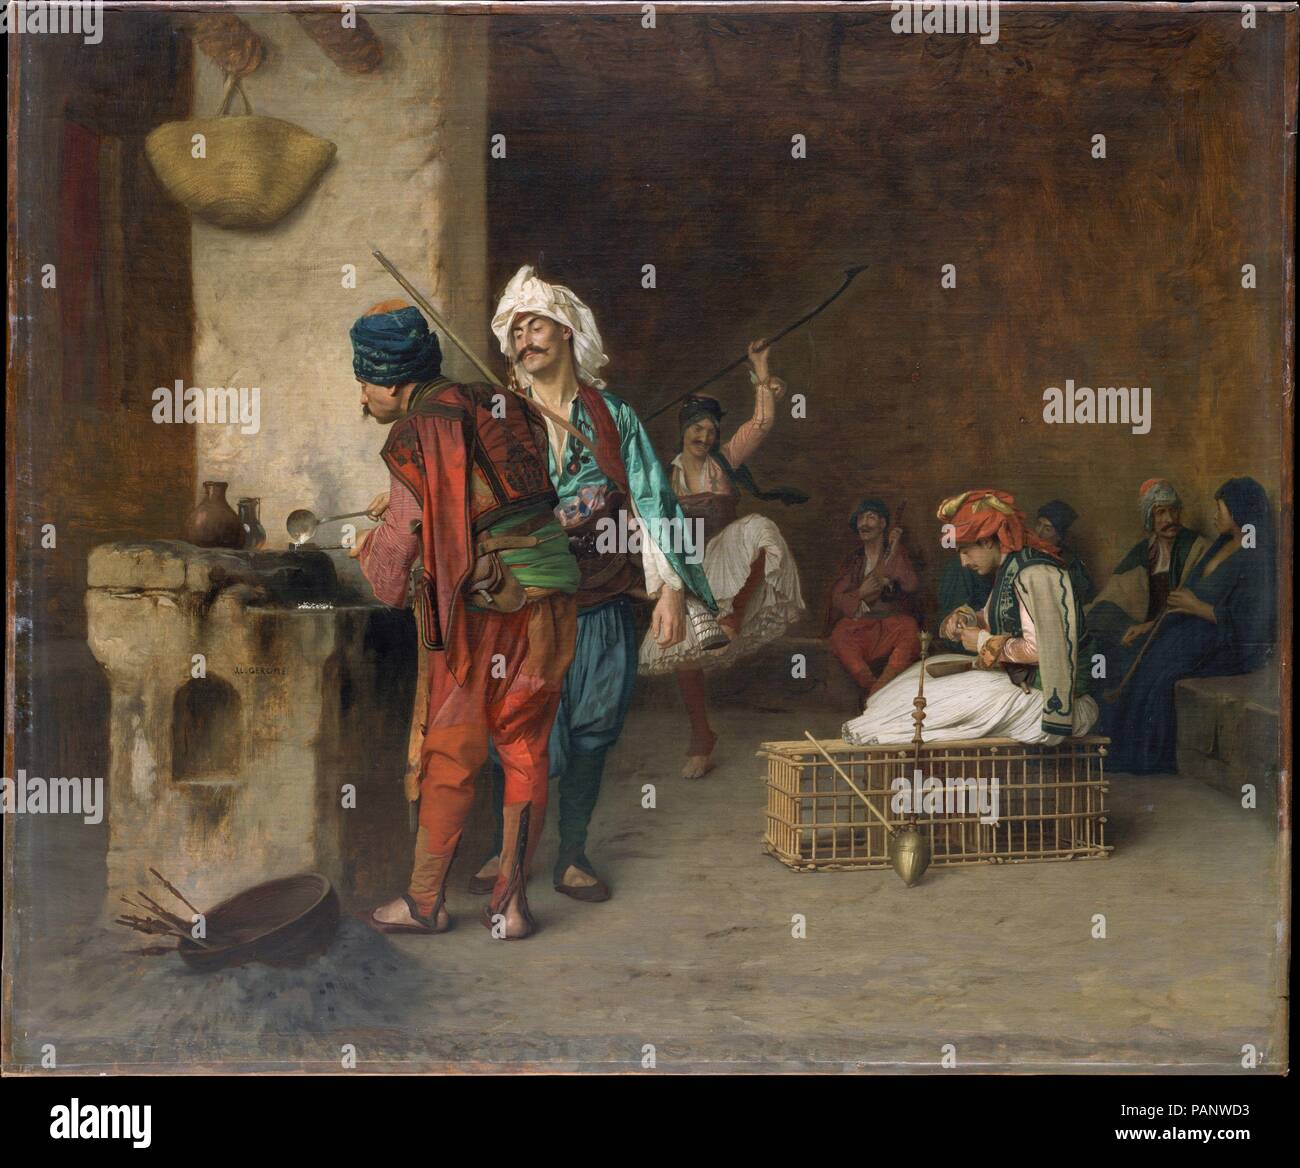 Cafe House, El Cairo (Fundición de viñetas). Artista: Jean-Léon Gérôme (1824-1904 Francés de Vesoul, París). Dimensiones: 21 1/2 x 24 3/4 pulg. (54,6 x 62,9 cm). Fecha: 1884 o anterior. Bashi-bazouks, soldados mercenarios en el ejército del sultán turco, eran conocidos por su ilegalidad y brutalidad, pero Gérôme usualmente representada en el ocio, como hizo aquí, más que participan en la batalla. Sus frecuentes repeticiones del tema a lo largo de un período de treinta años, en conjunción con una técnica que maduró temprano y ha cambiado muy poco, hacen de estos lienzos difícil hasta la fecha sobre la base de estilo solos. Gérôme probablemente Foto de stock